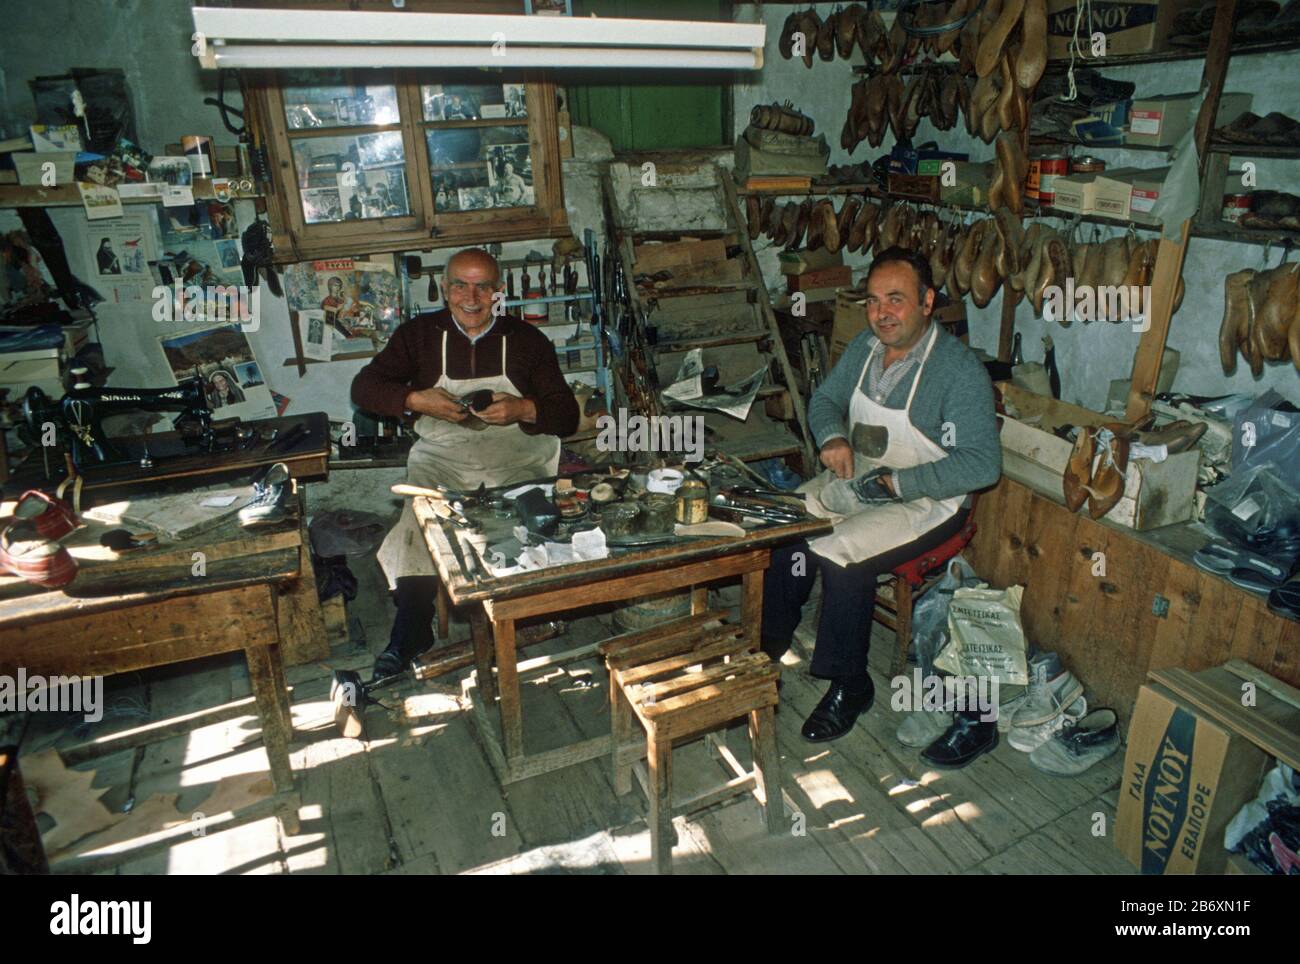 Affollato interno di un vecchio negozio di ciottoli a Metsovo, Epiro, Grecia. I due produttori di scarpe lavorano con scarpe e attrezzi appesi intorno a loro. Foto Stock